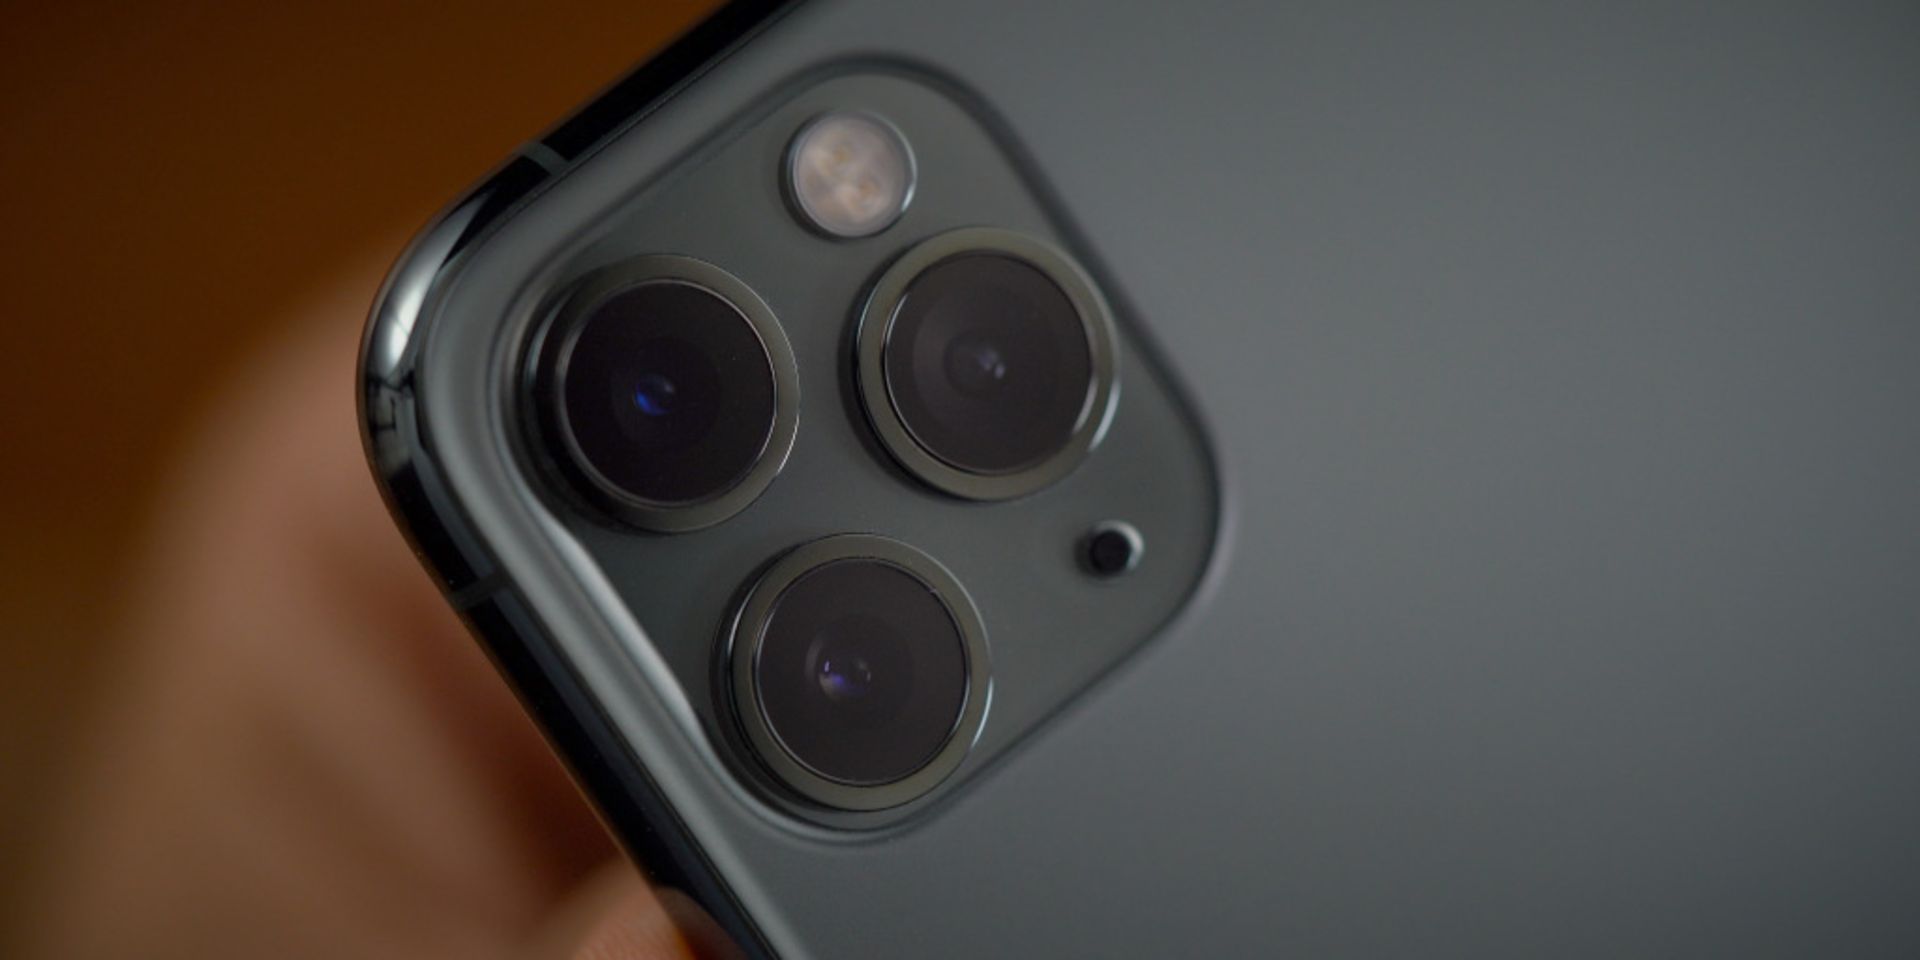 دوربین اصلی آیفون 11 پرو اپل / Apple iPhone 11 از نمای نزدیک